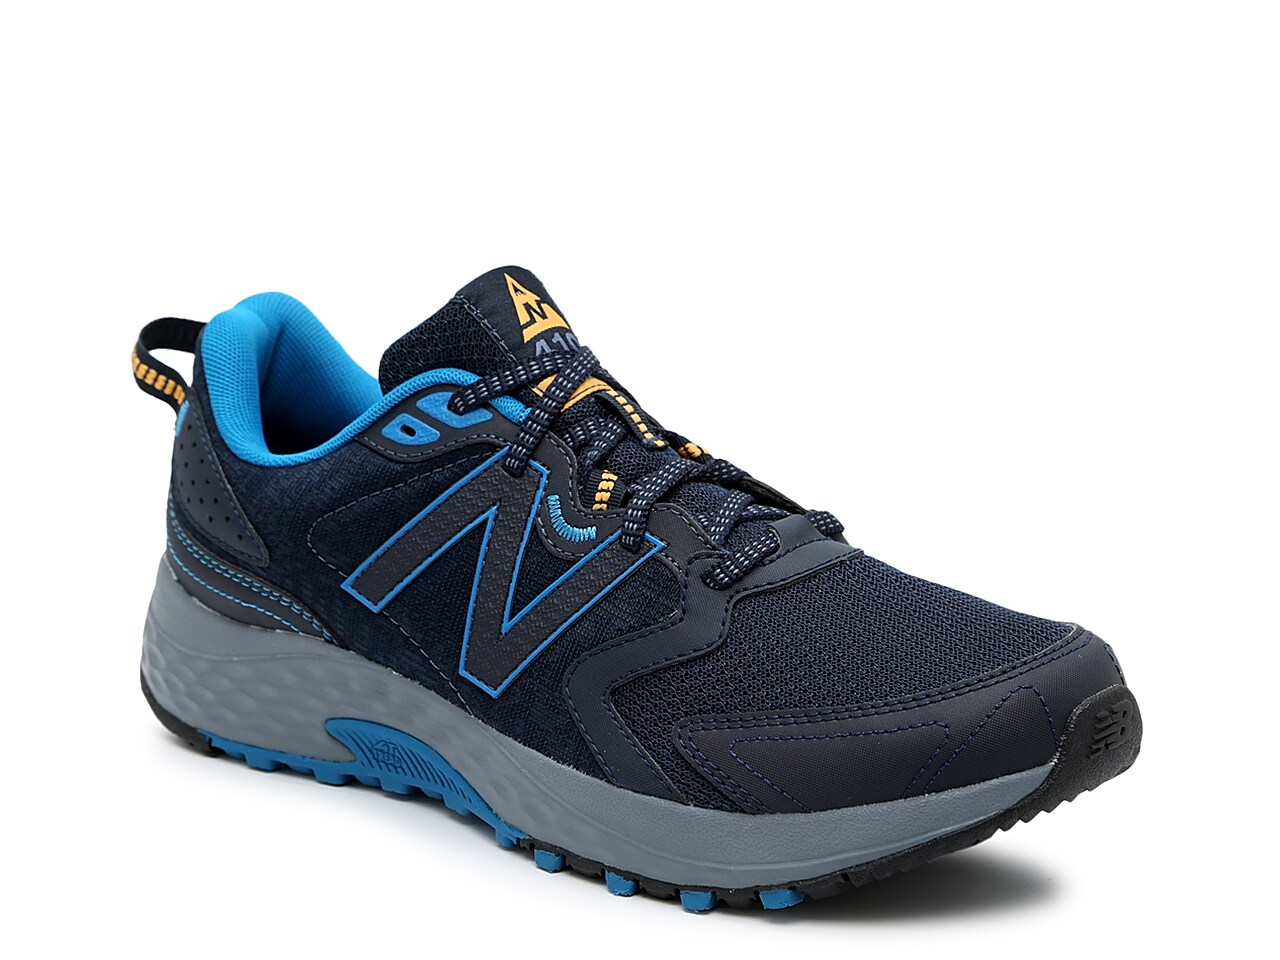 New Balance 410 v7 Trail Running Shoe - Men's